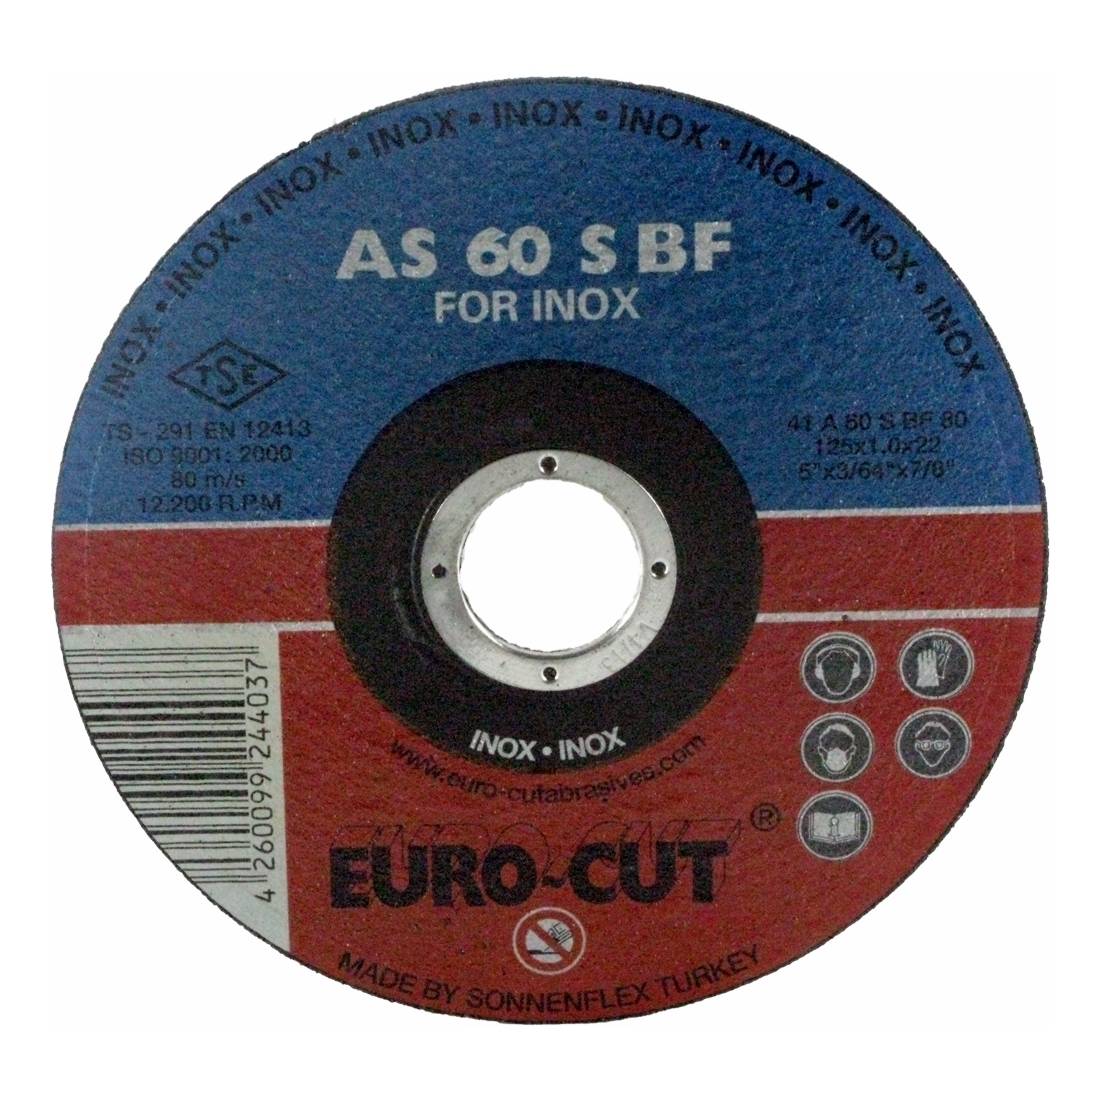 Edelstahl-Trennscheibe 'Euro Cut' 115 x 22,2 x 1,6 mm, gerade